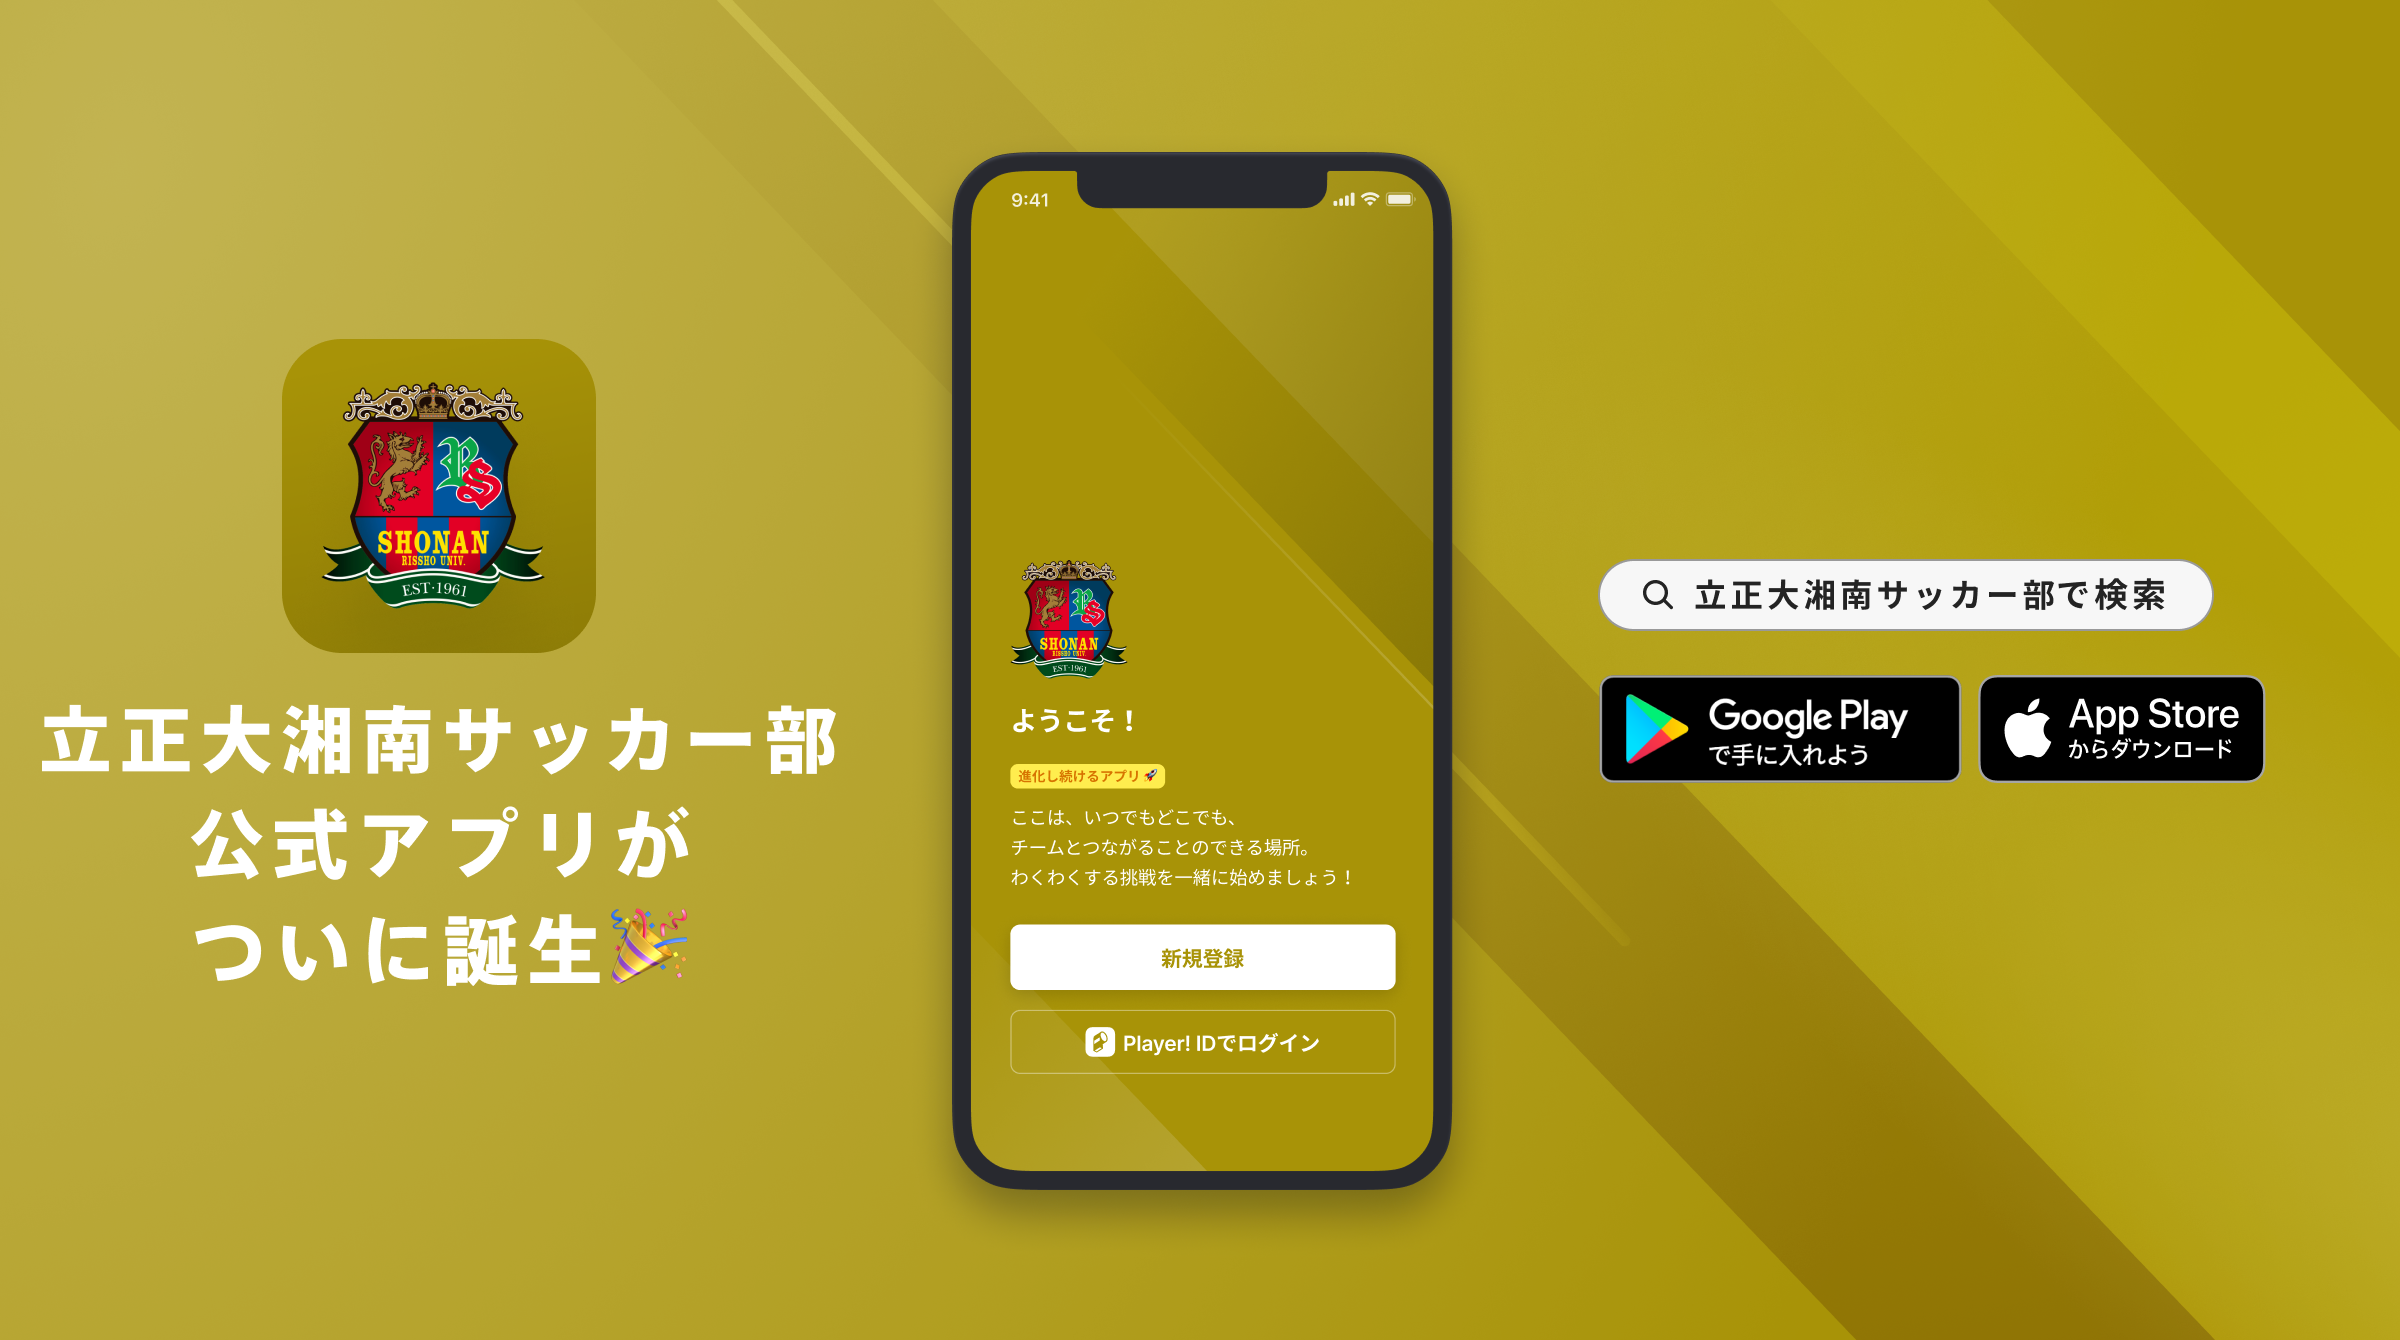 立正大学淞南高校サッカー部 公式アプリリリースのお知らせ Ookamiのプレスリリース